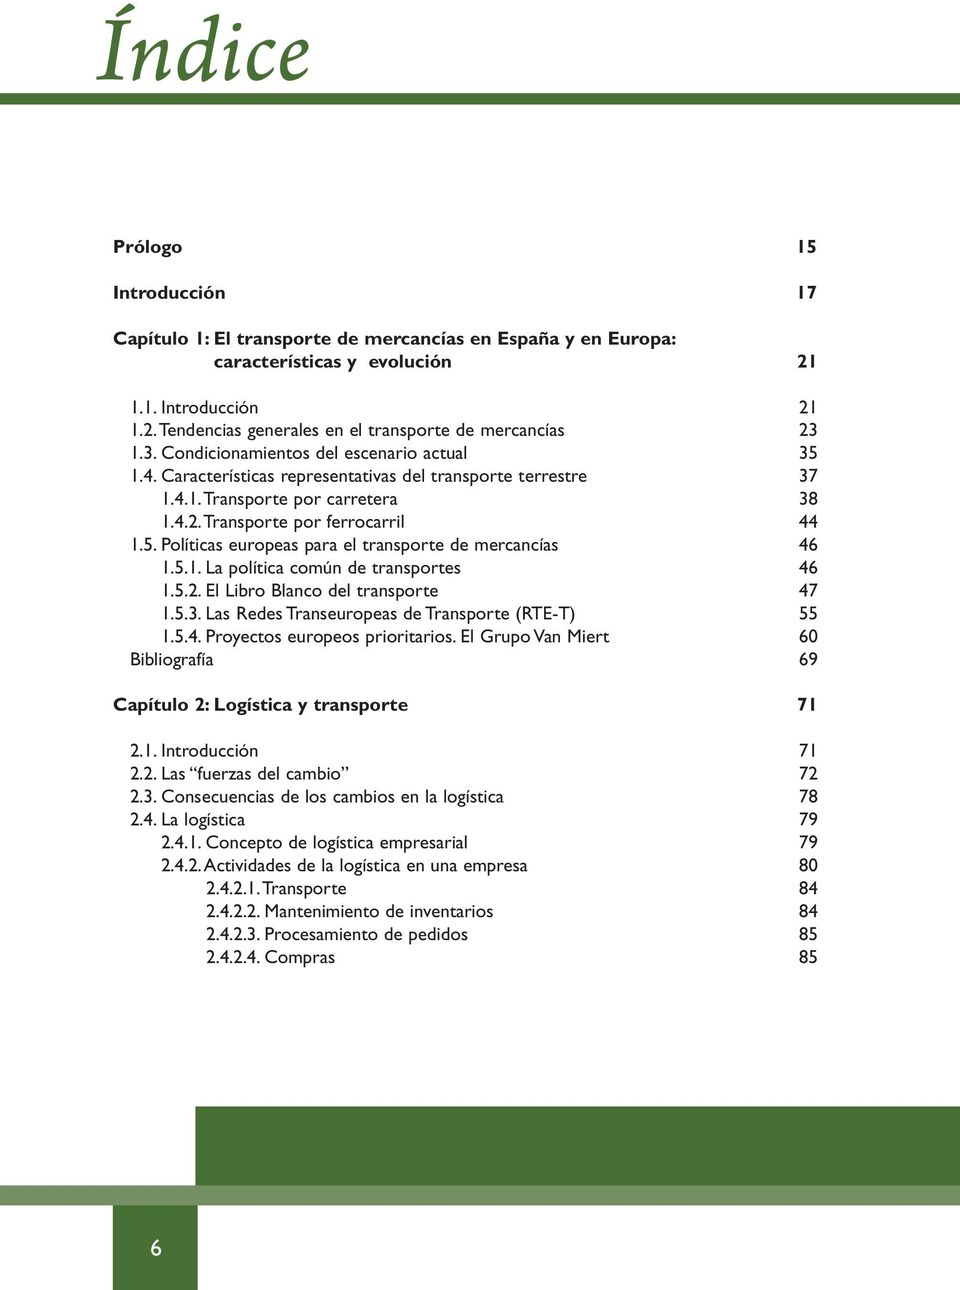 5.1. La política común de transportes 46 1.5.2. El Libro Blanco del transporte 47 1.5.3. Las Redes Transeuropeas de Transporte (RTE-T) 55 1.5.4. Proyectos europeos prioritarios.